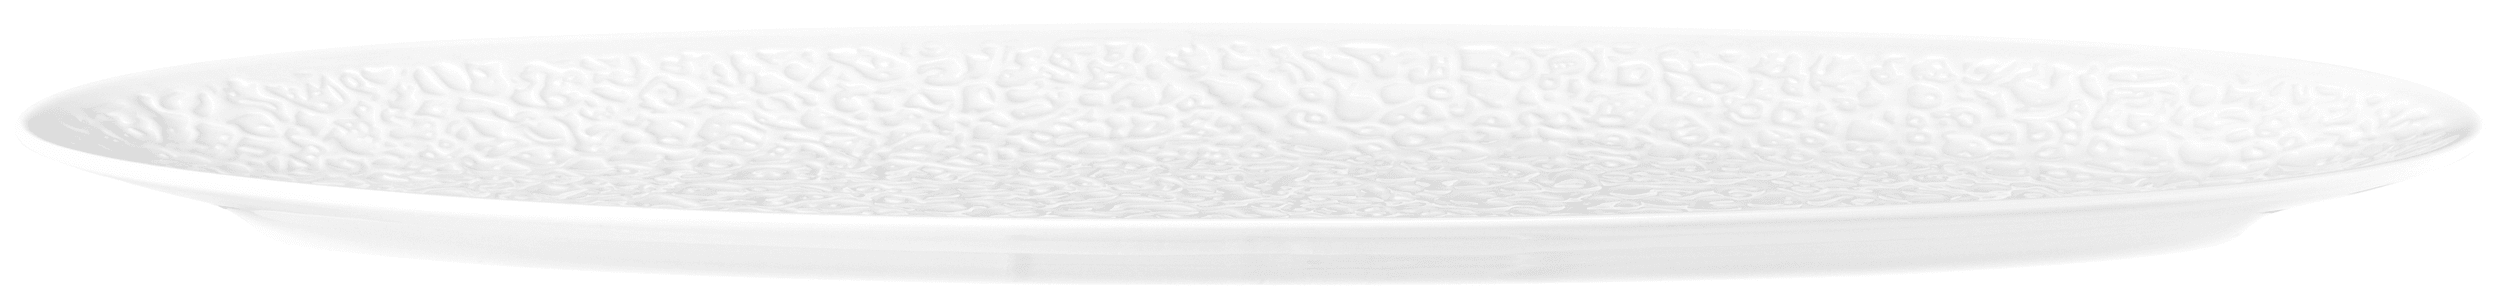 Seltmann Porzellan Nori Weiß Coupplatte Vollrelief 44 x 14 cm